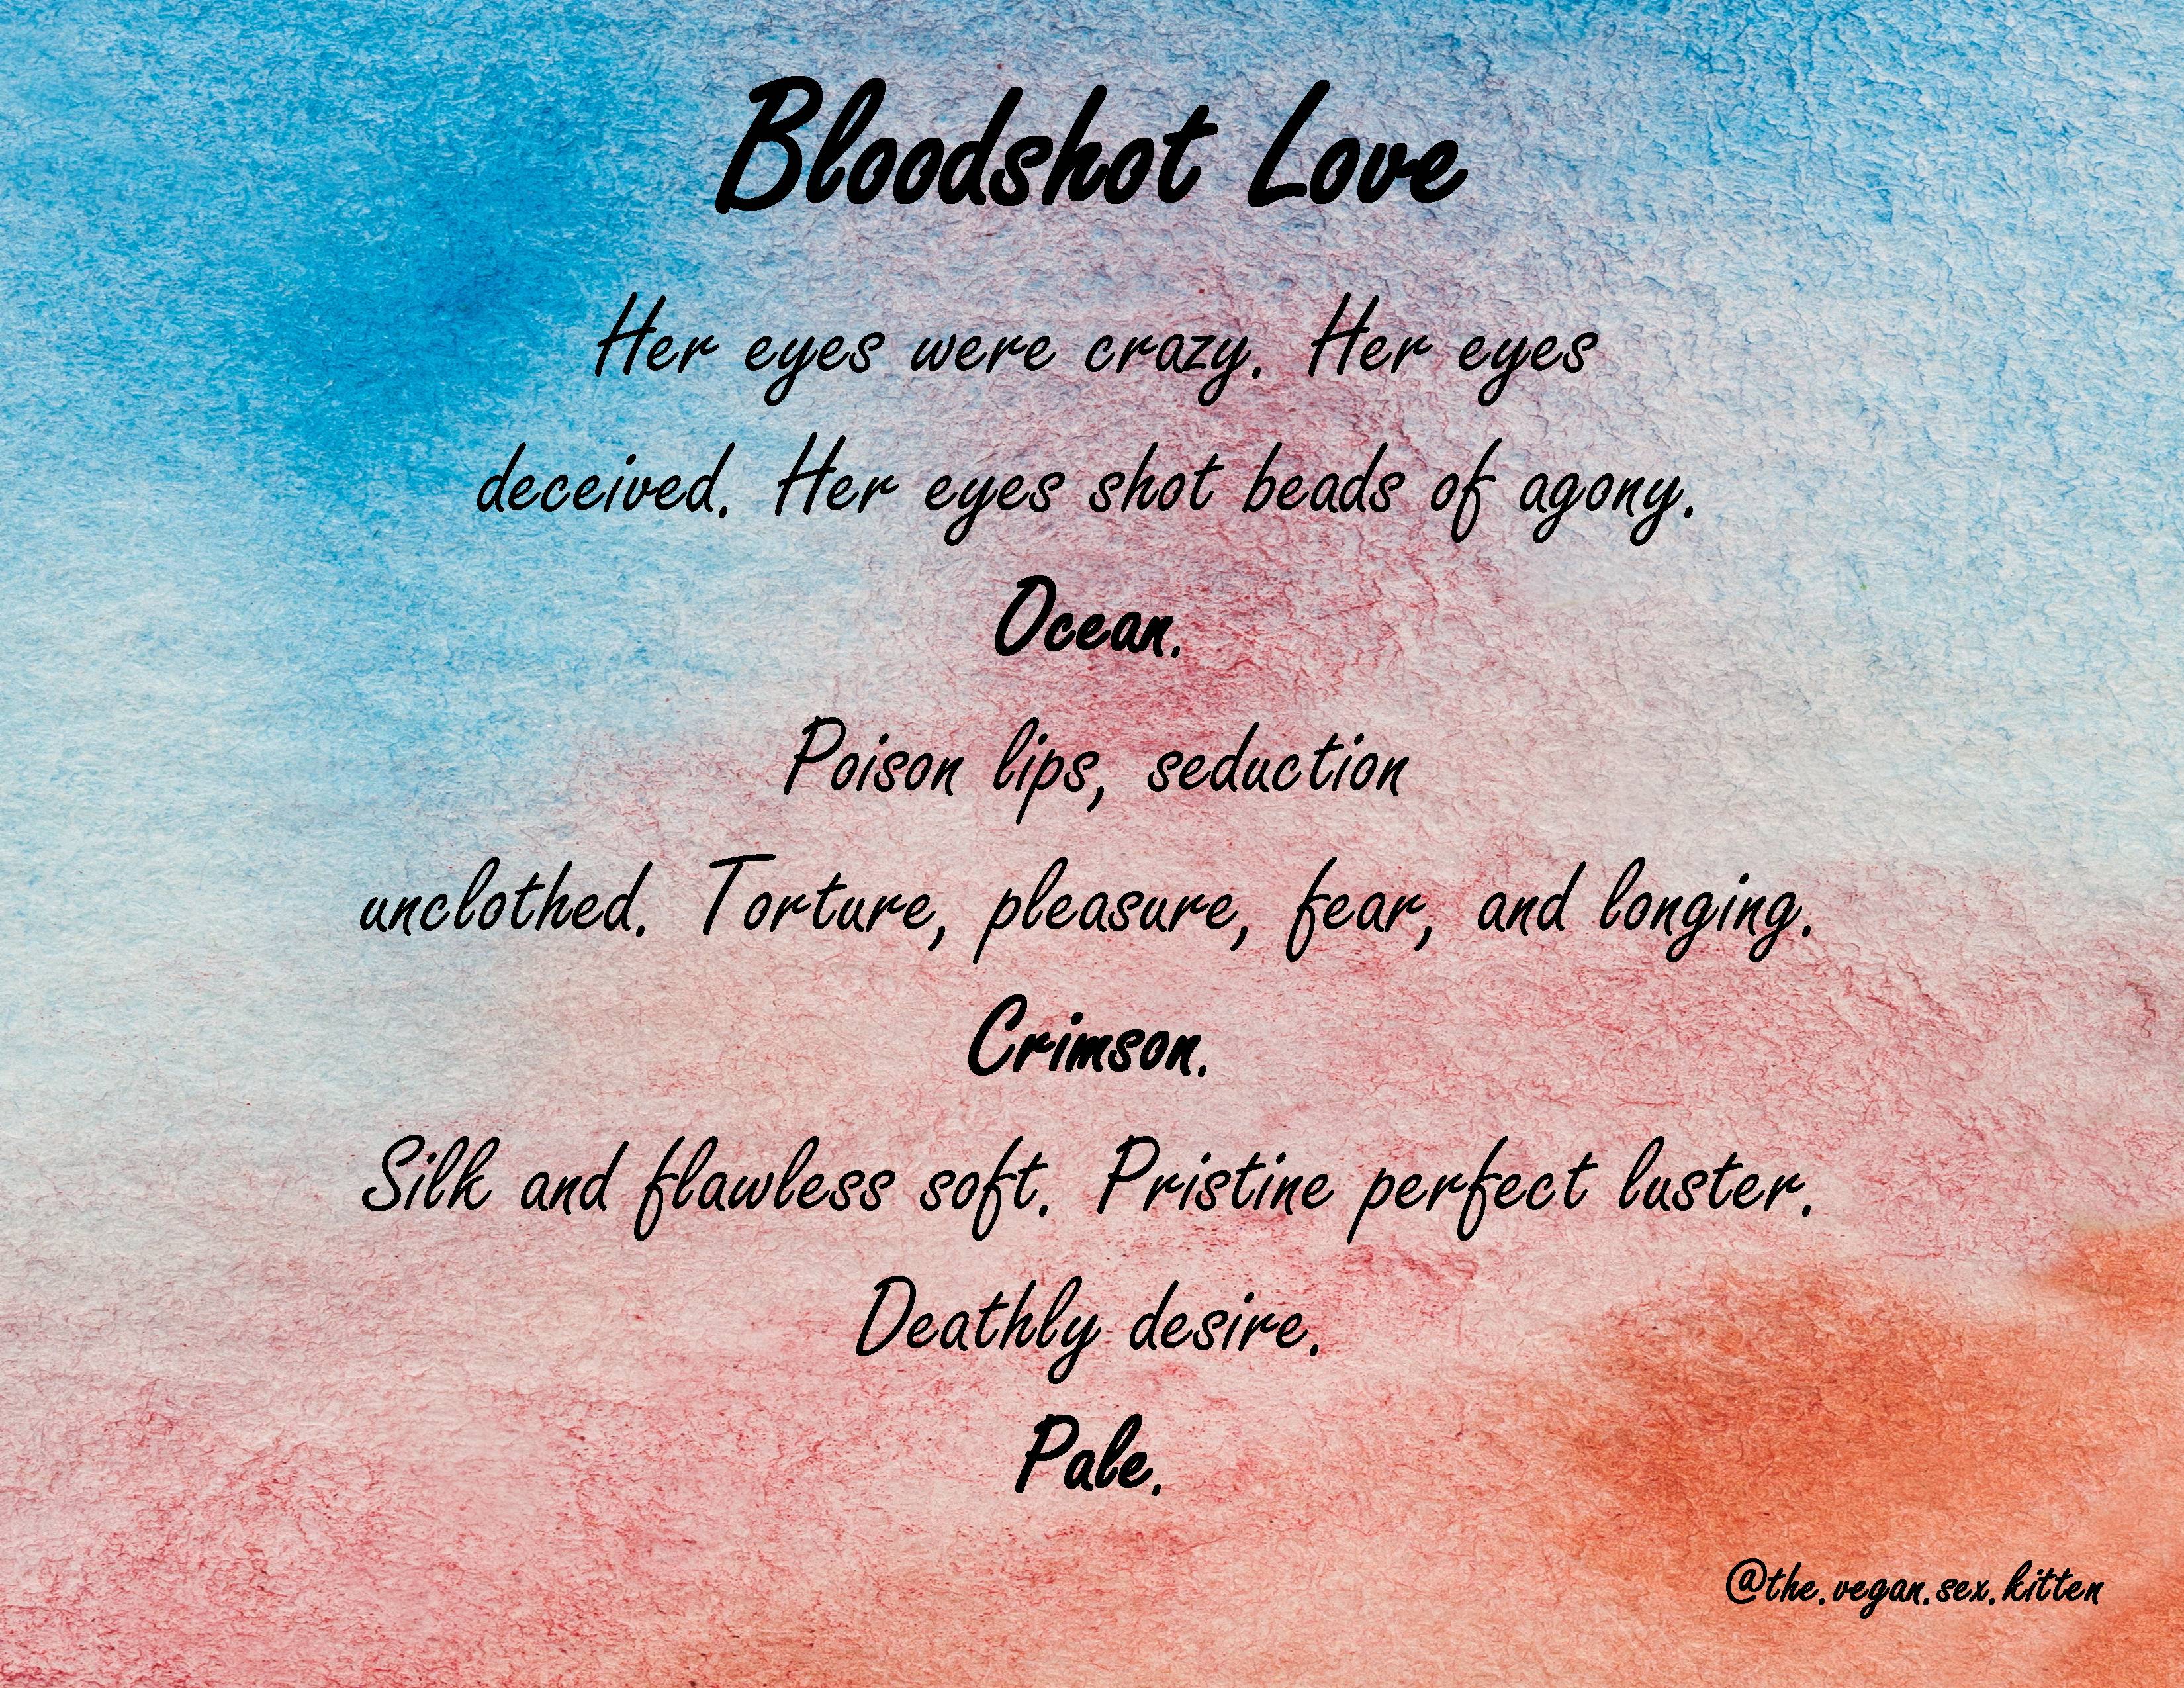 Bloodshot Love Poem.jpg